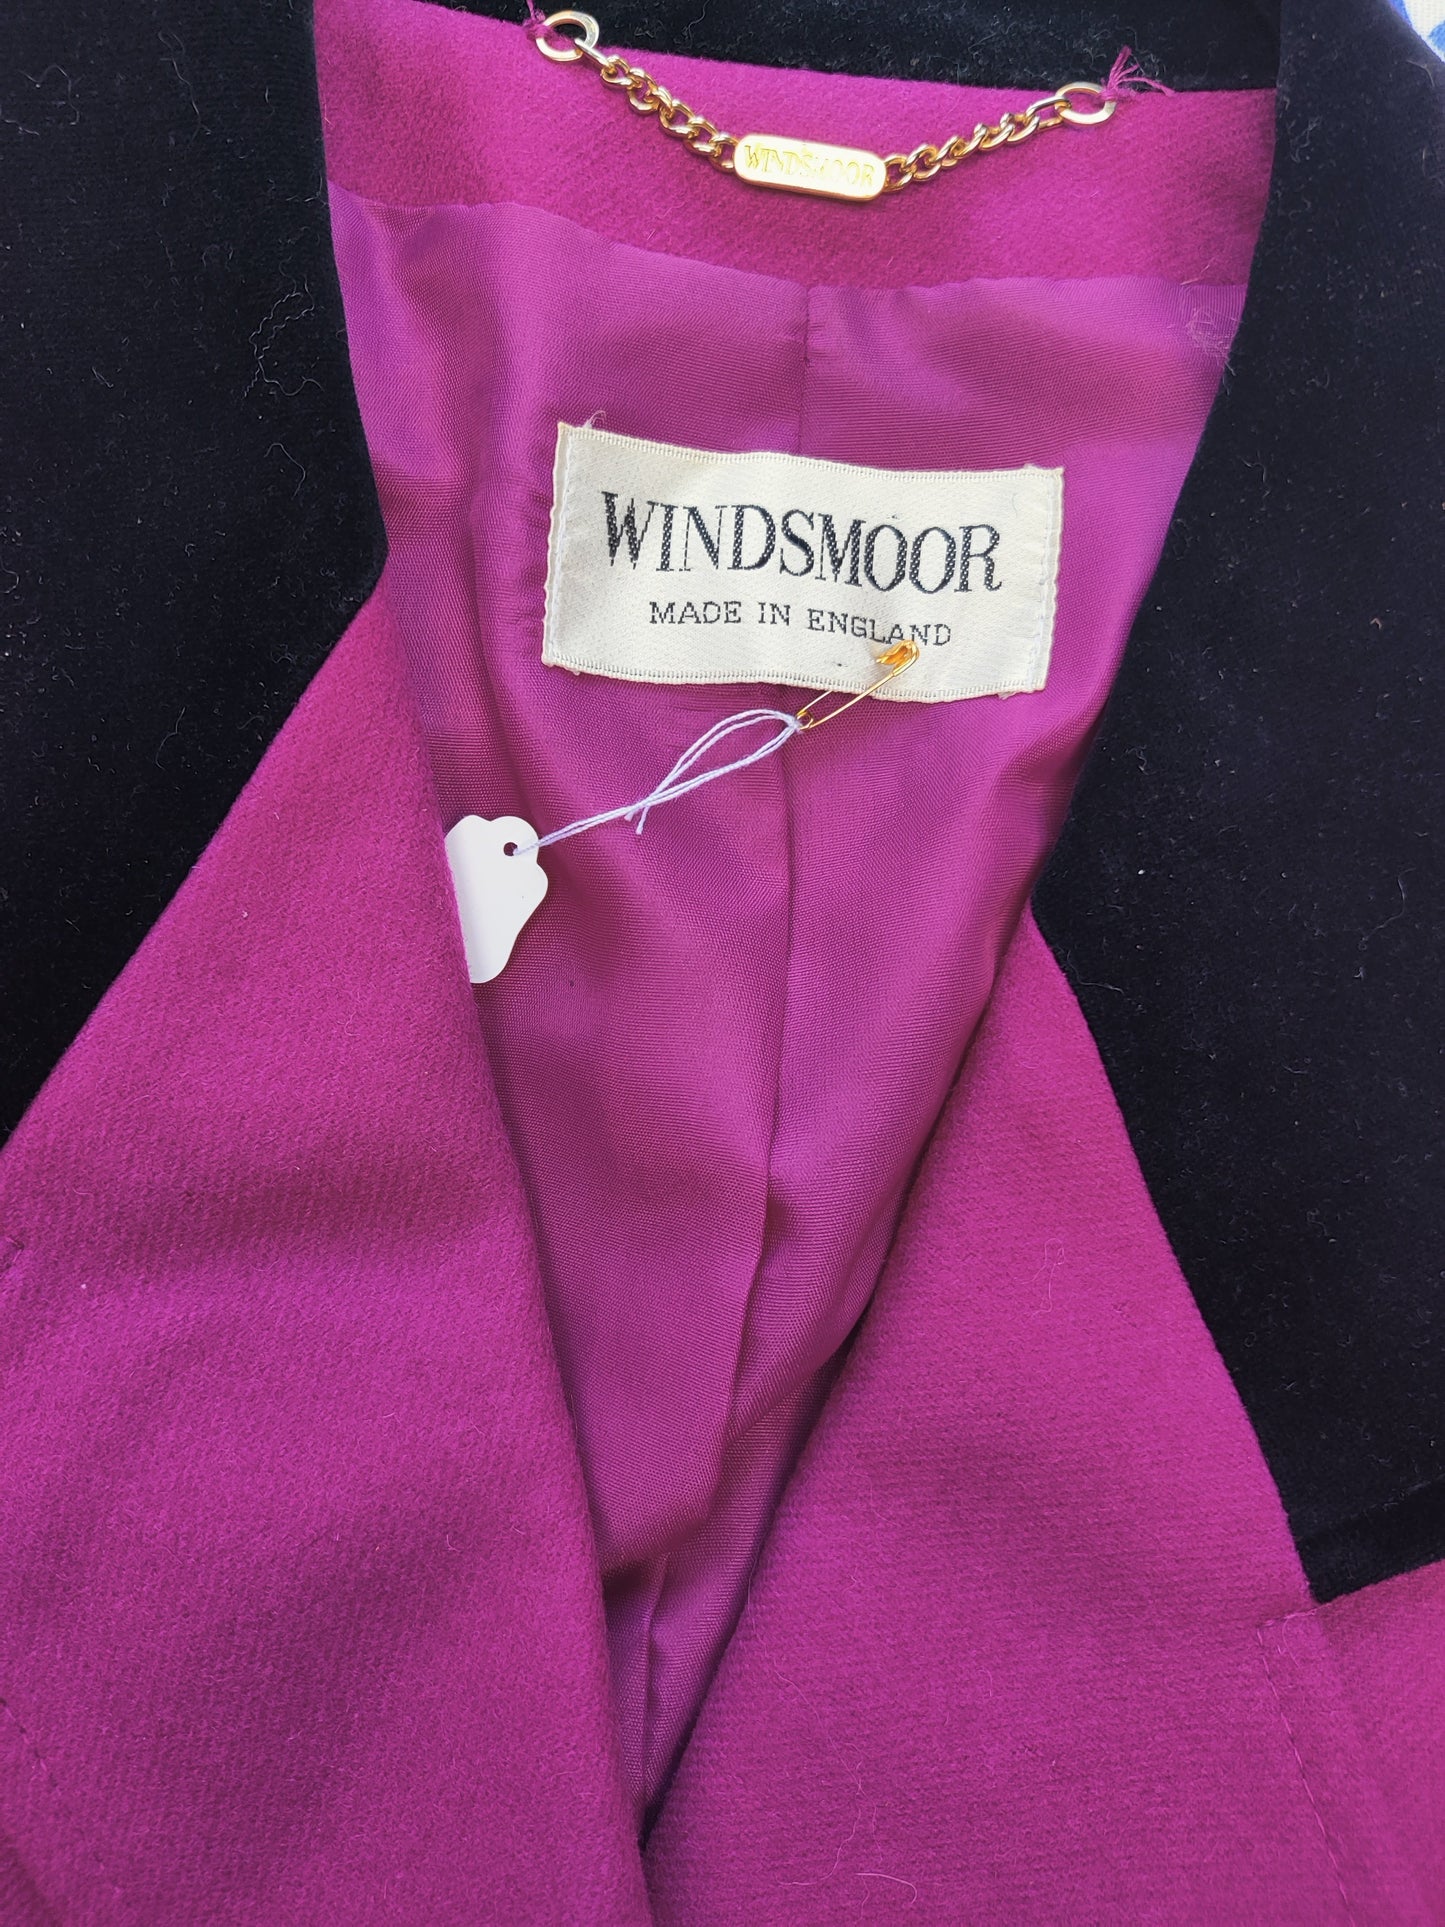 80s Windsmoor jacket